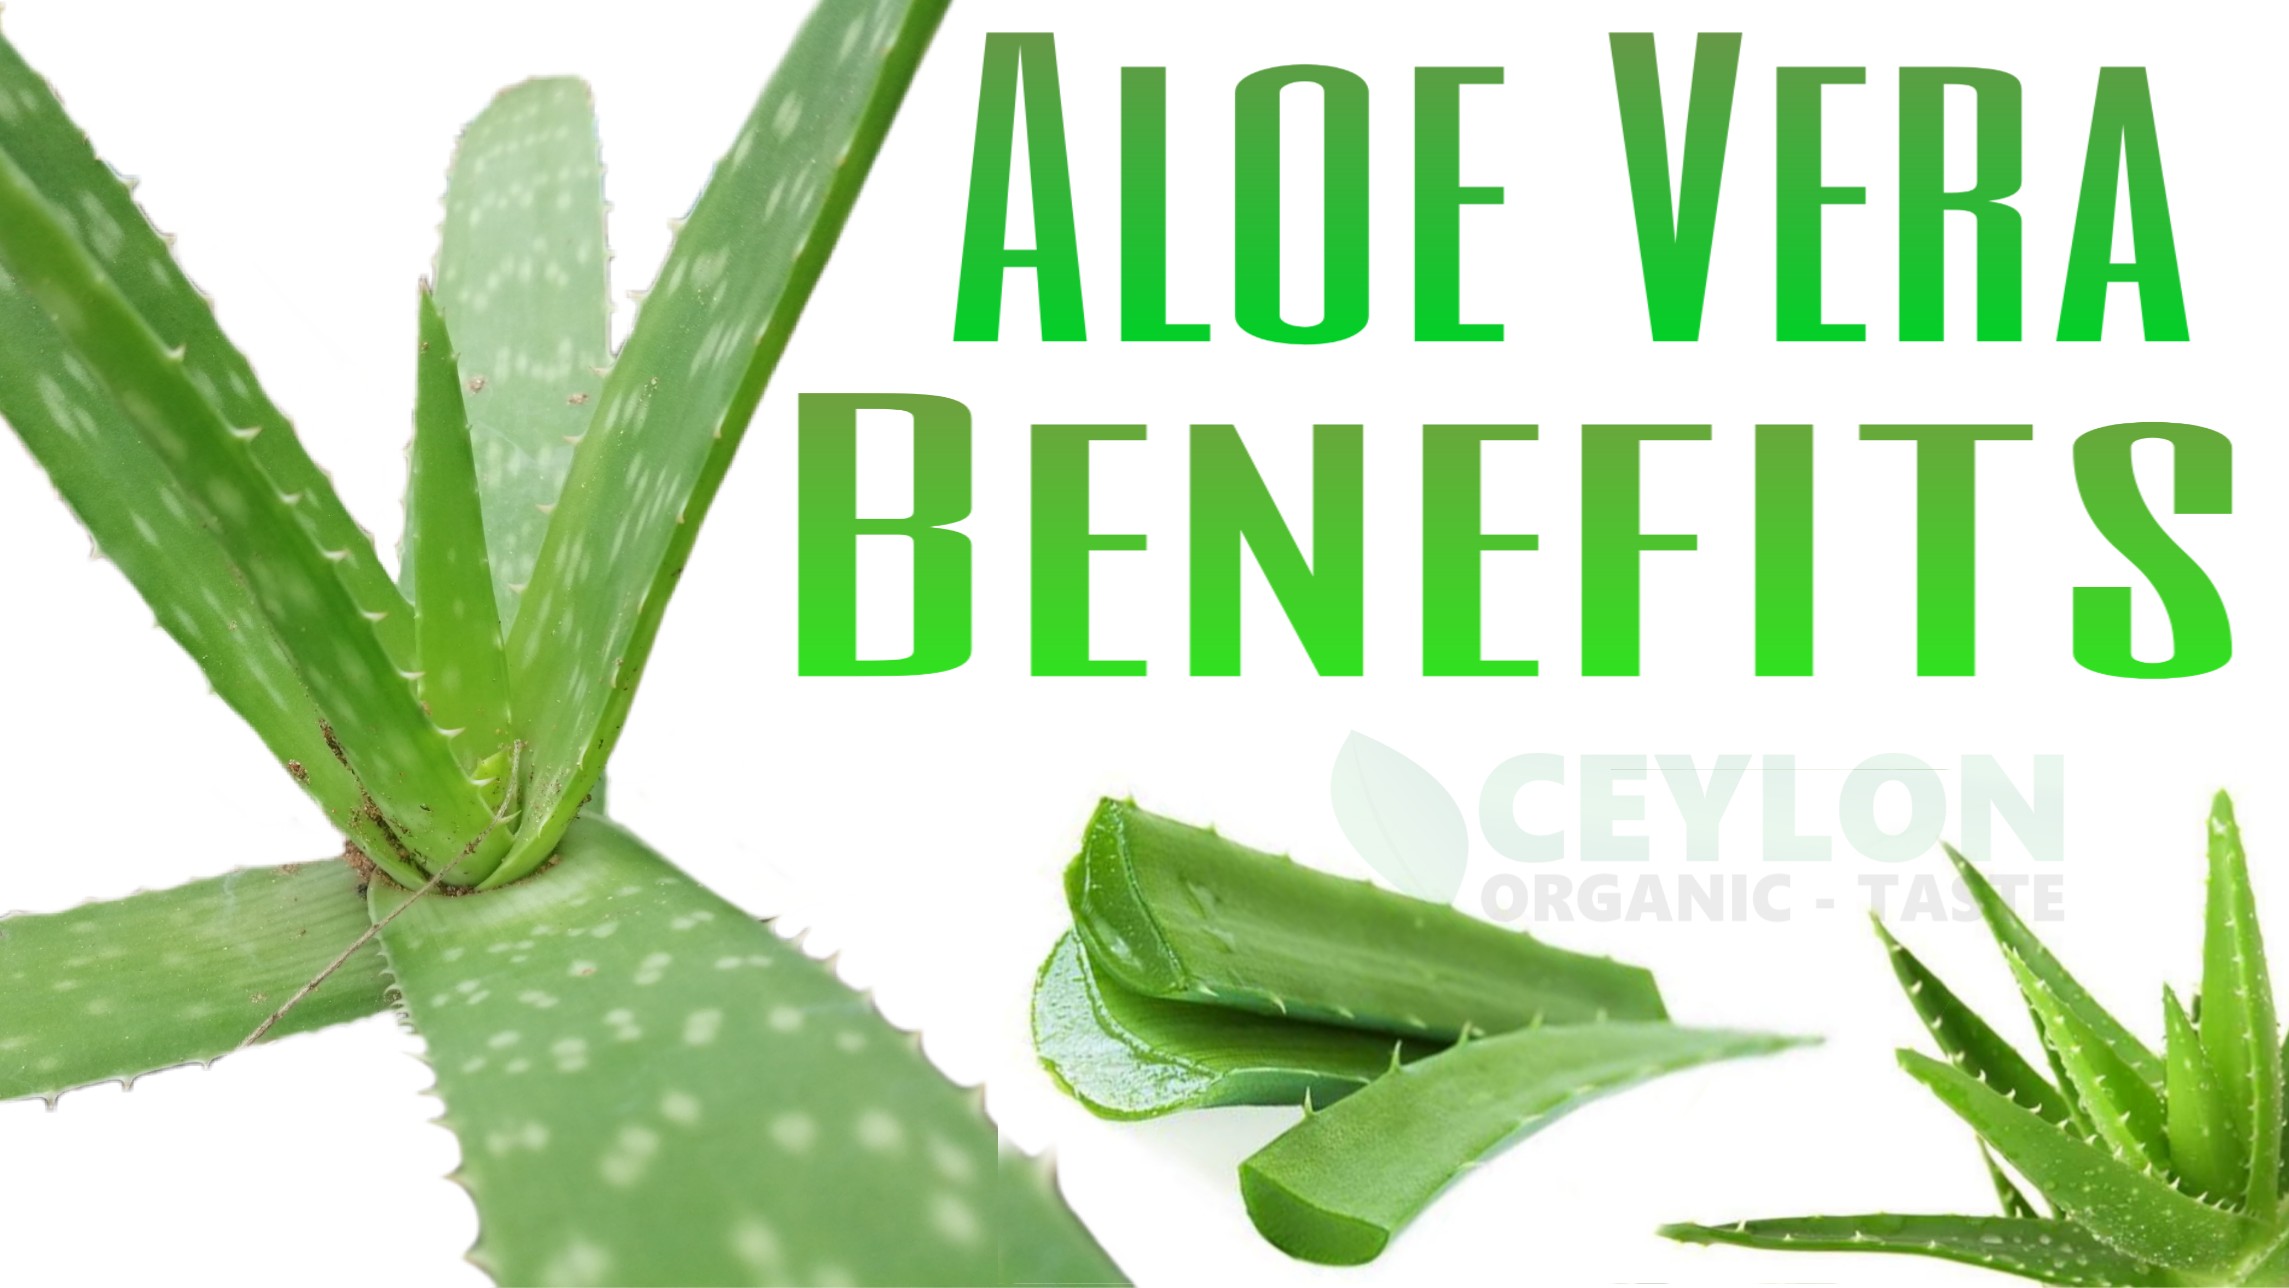 15 Natural Benefits of Aloe-Vera